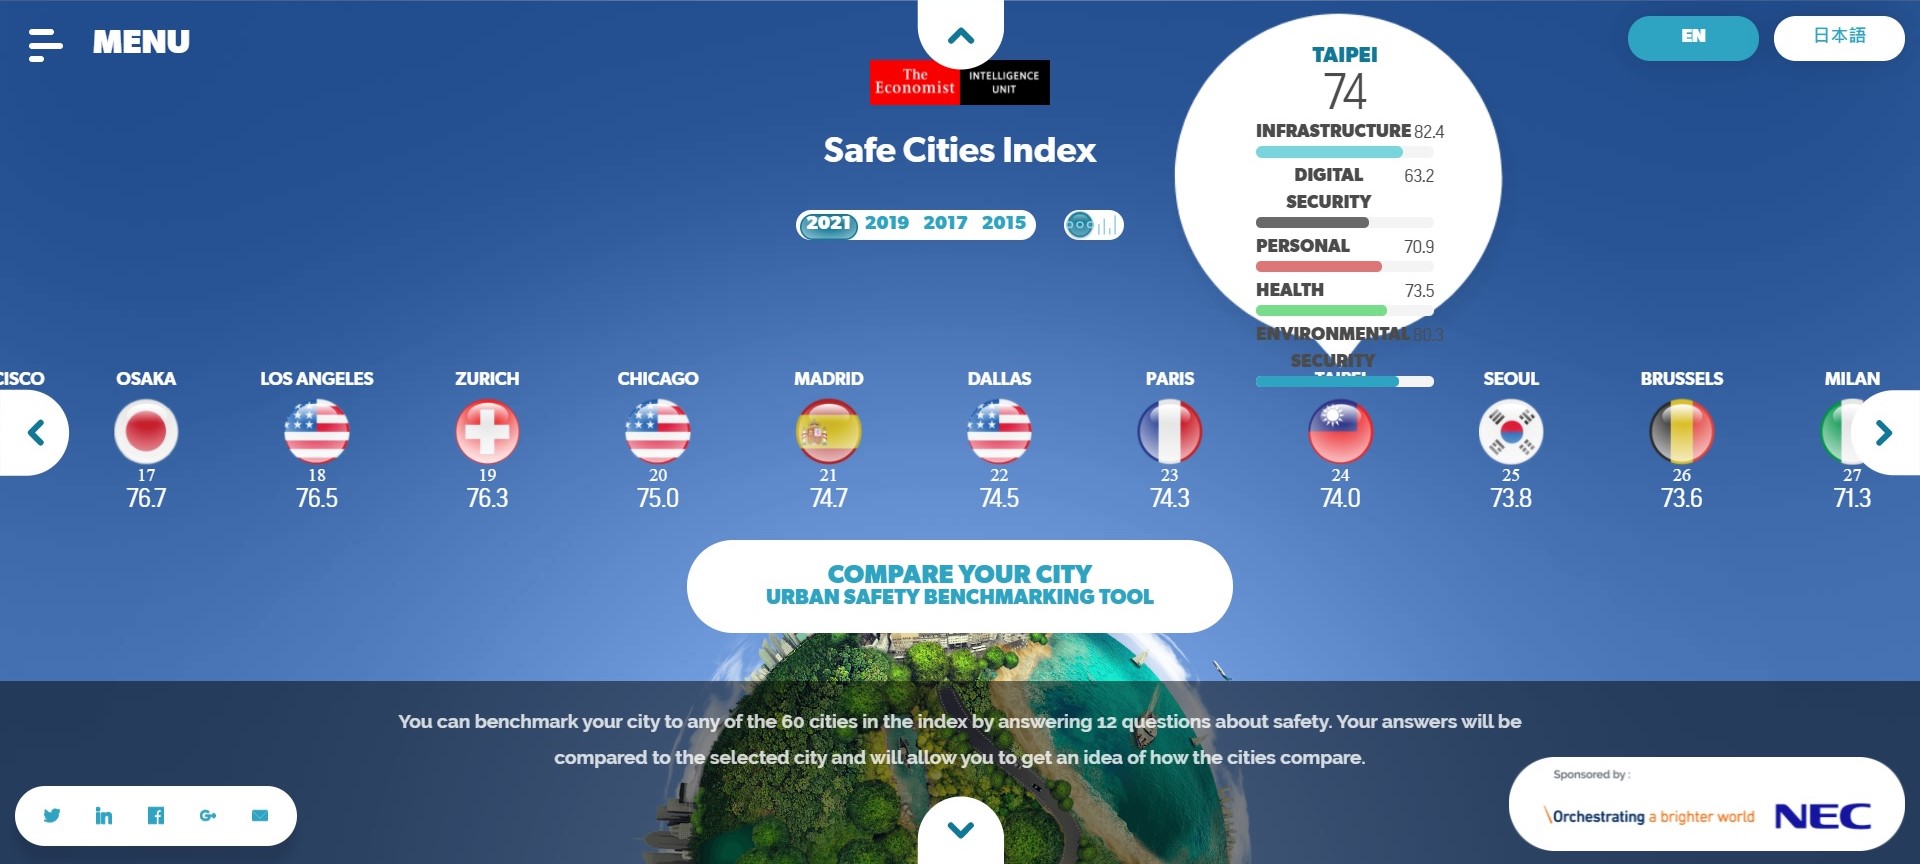 So với lần xếp hạng trước nên trong bảng xếp hạng năm nay thành phố Đài Bắc xếp hạng thứ 24 và đứng thứ 4 trong số các thành phố của châu Á. (Nguồn ảnh: website safecities.economist.com)